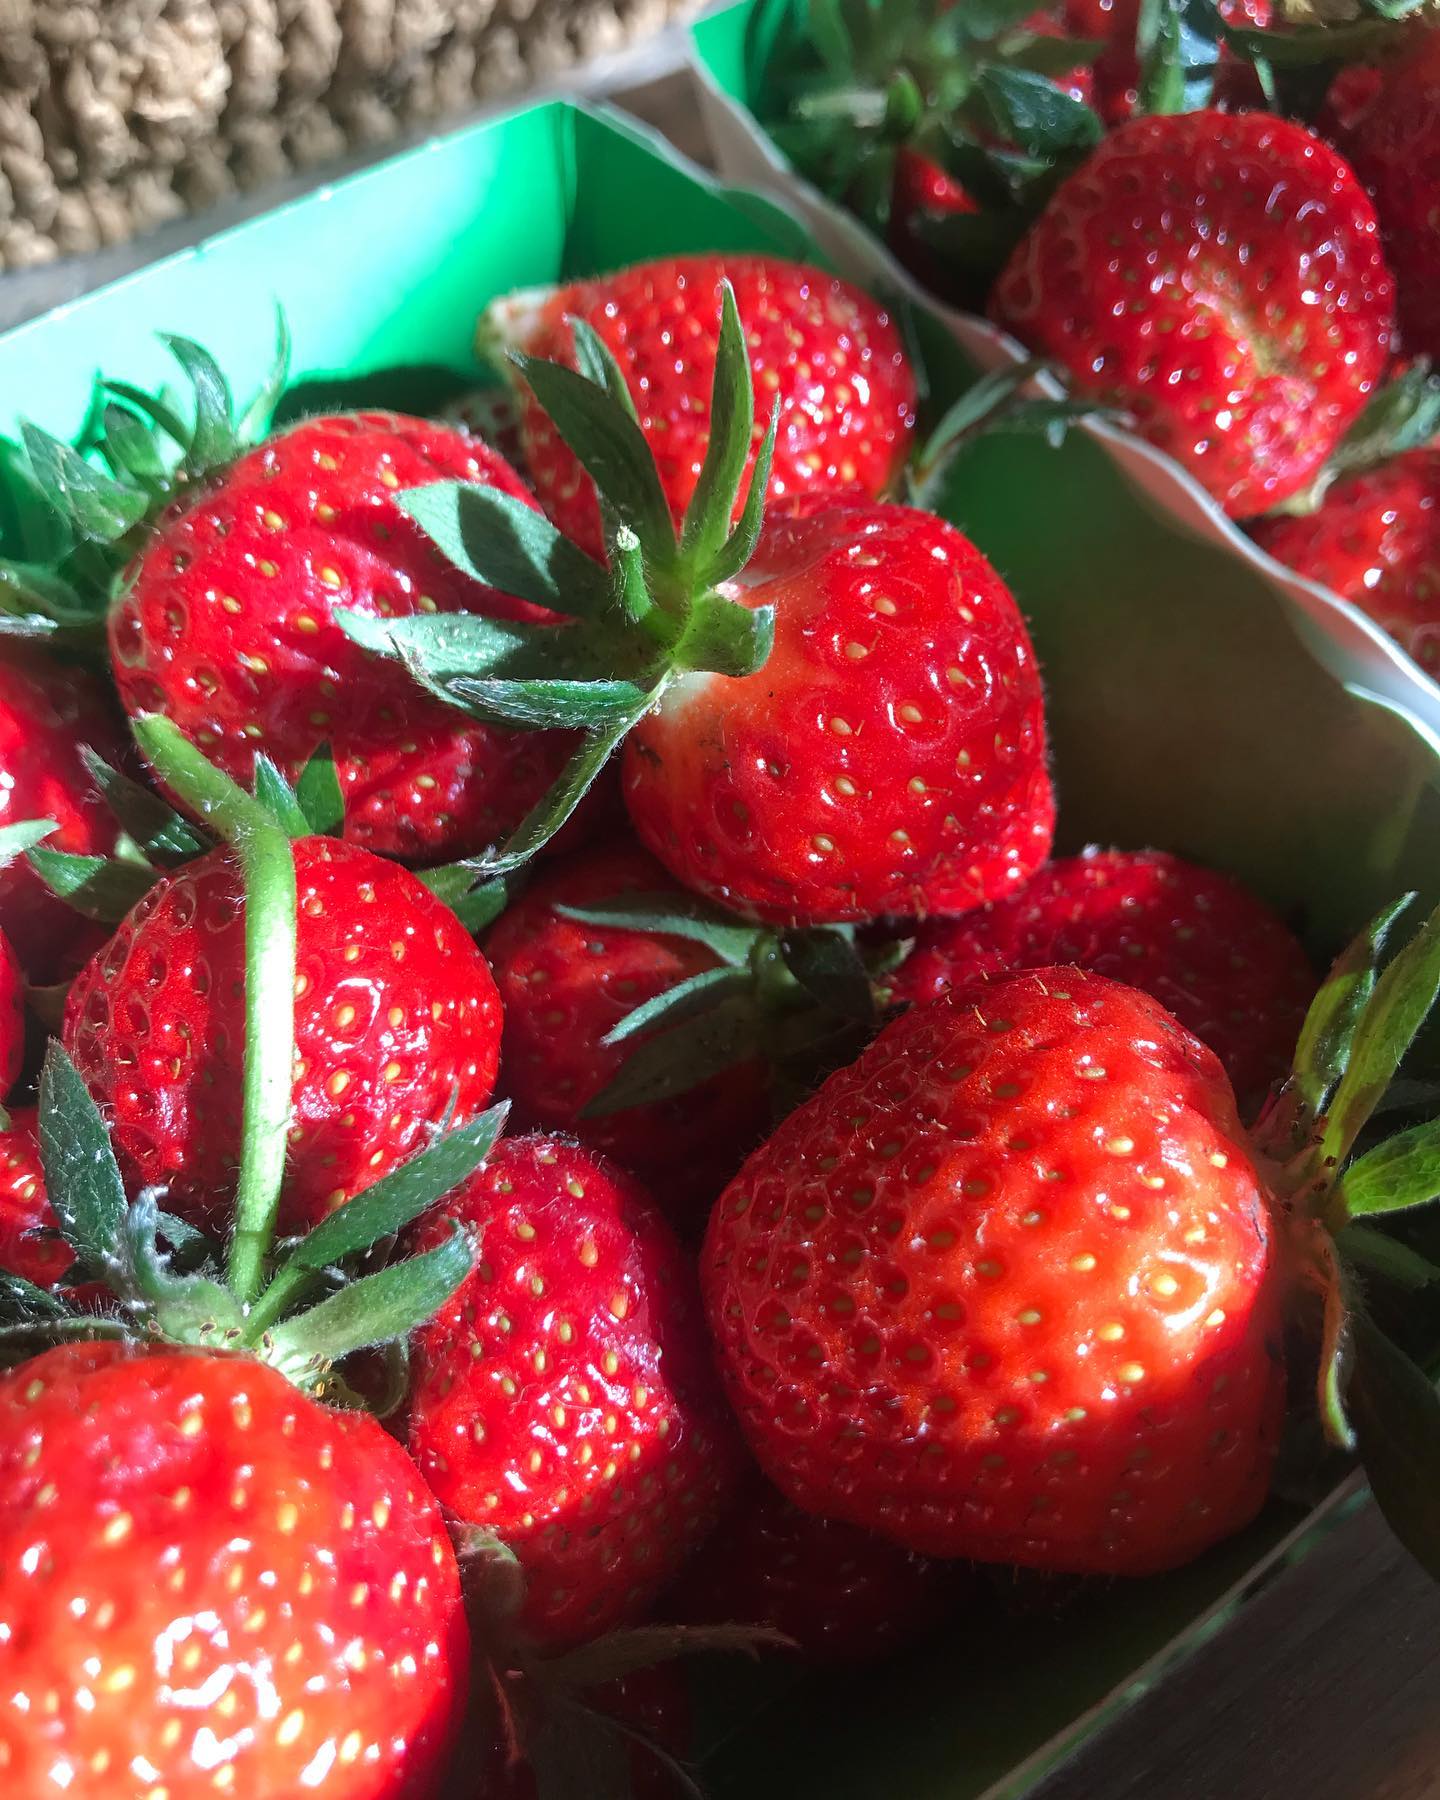 Les fraises 🍓 parfaites de La maraîchères sont arrivées ! En direct producteur, ceux sont celles que j’ai utilisé pour mon fraisiers de dingue 😛#lamaraichere #fraisebiologique #directproducteur #fraises🍓 #lebioenvrac